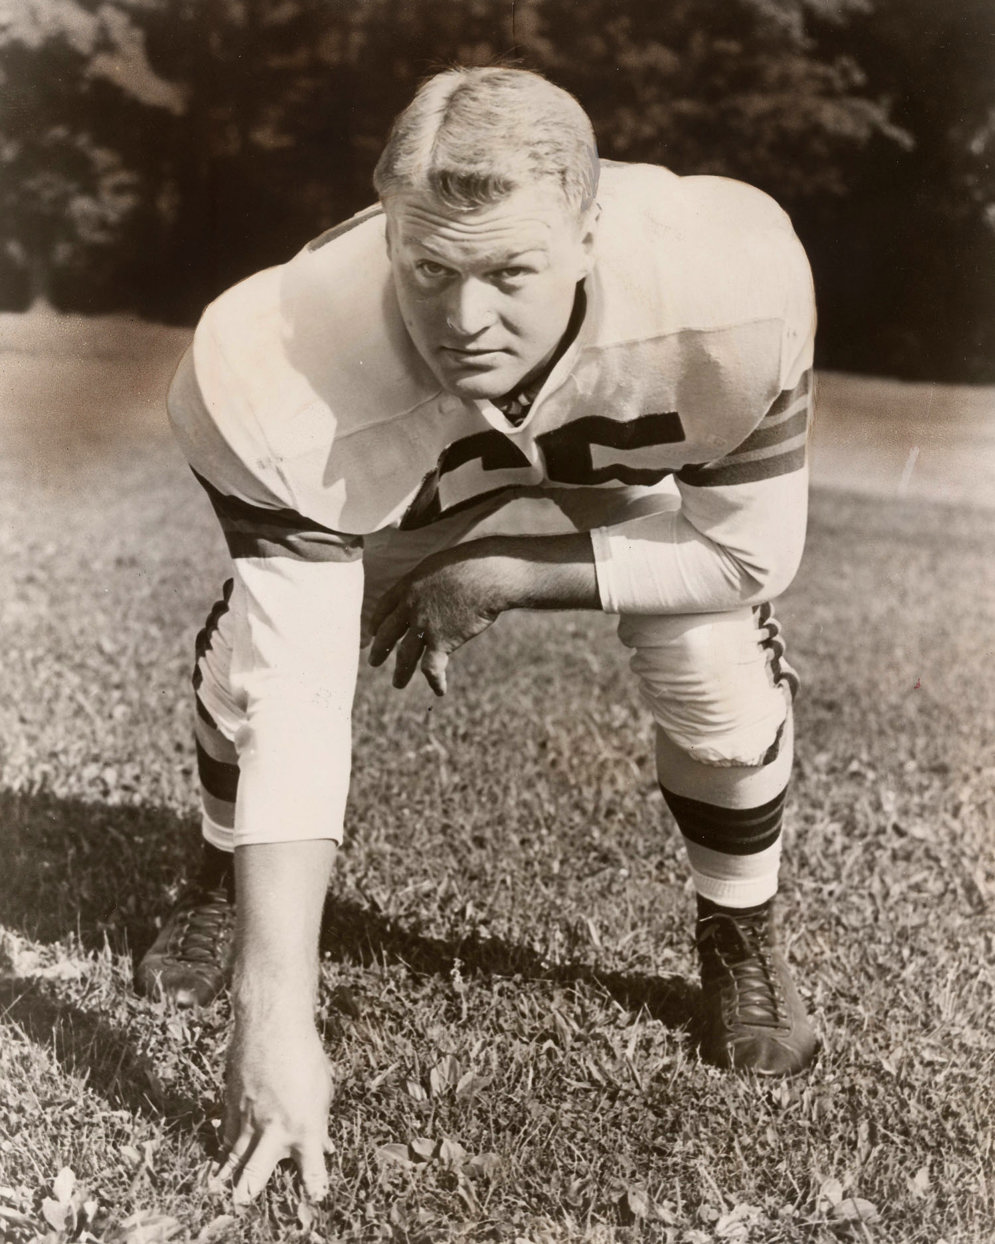 El guardia de los Cleveland Browns Chuck Noll (futuro miembro del Sal&#243;n de la Fama por sus triunfos como entrenador con Pittsburgh) era vendedor de Trojan Freight Lines fuera de temporada. (Fotograf&#237;a de AP/Fotograf&#237;as de la NFL)